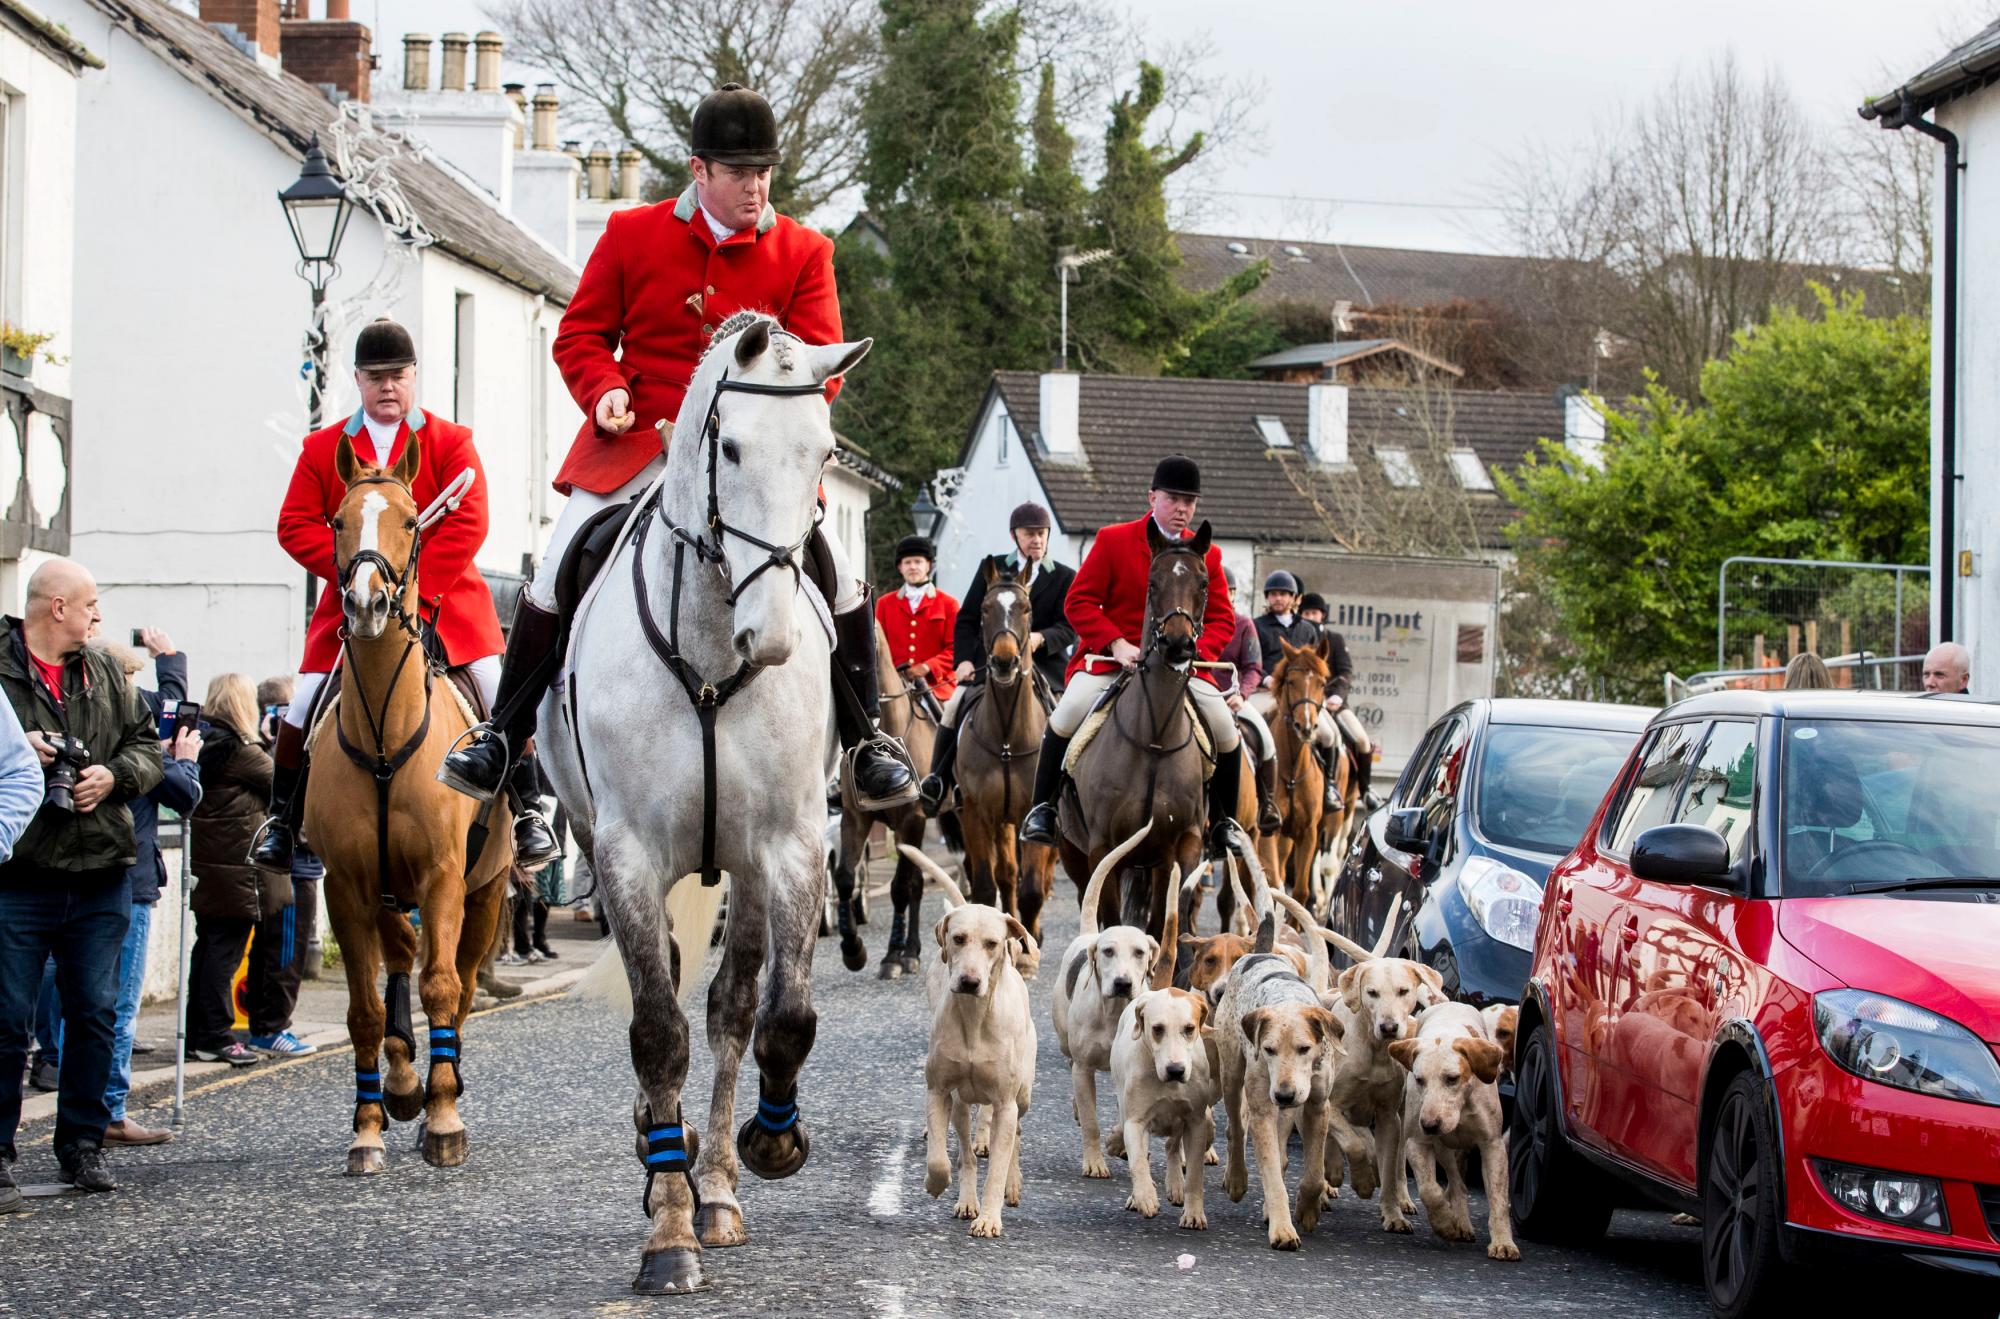 El Maestro de cazador conduce a los perros y jinetes a través de Main Street en Crawfordsburn, Irlanda del Norte, durante la búsqueda de Año Nuevo en North Down, el martes 1 de enero de 2019.